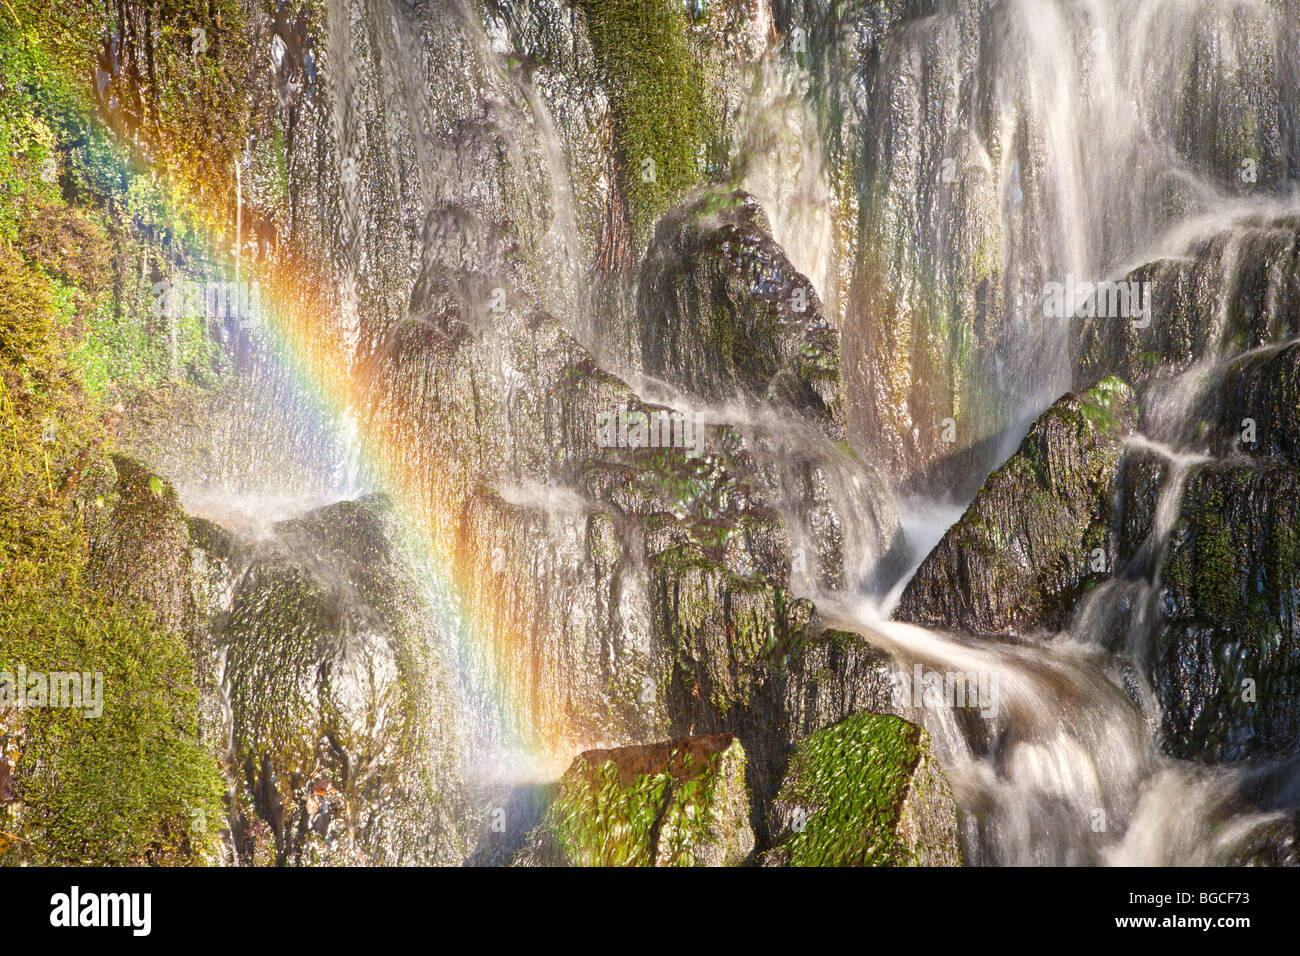 Rainbow in Waterfall, Ingleton Yorkshire. Stock Photo